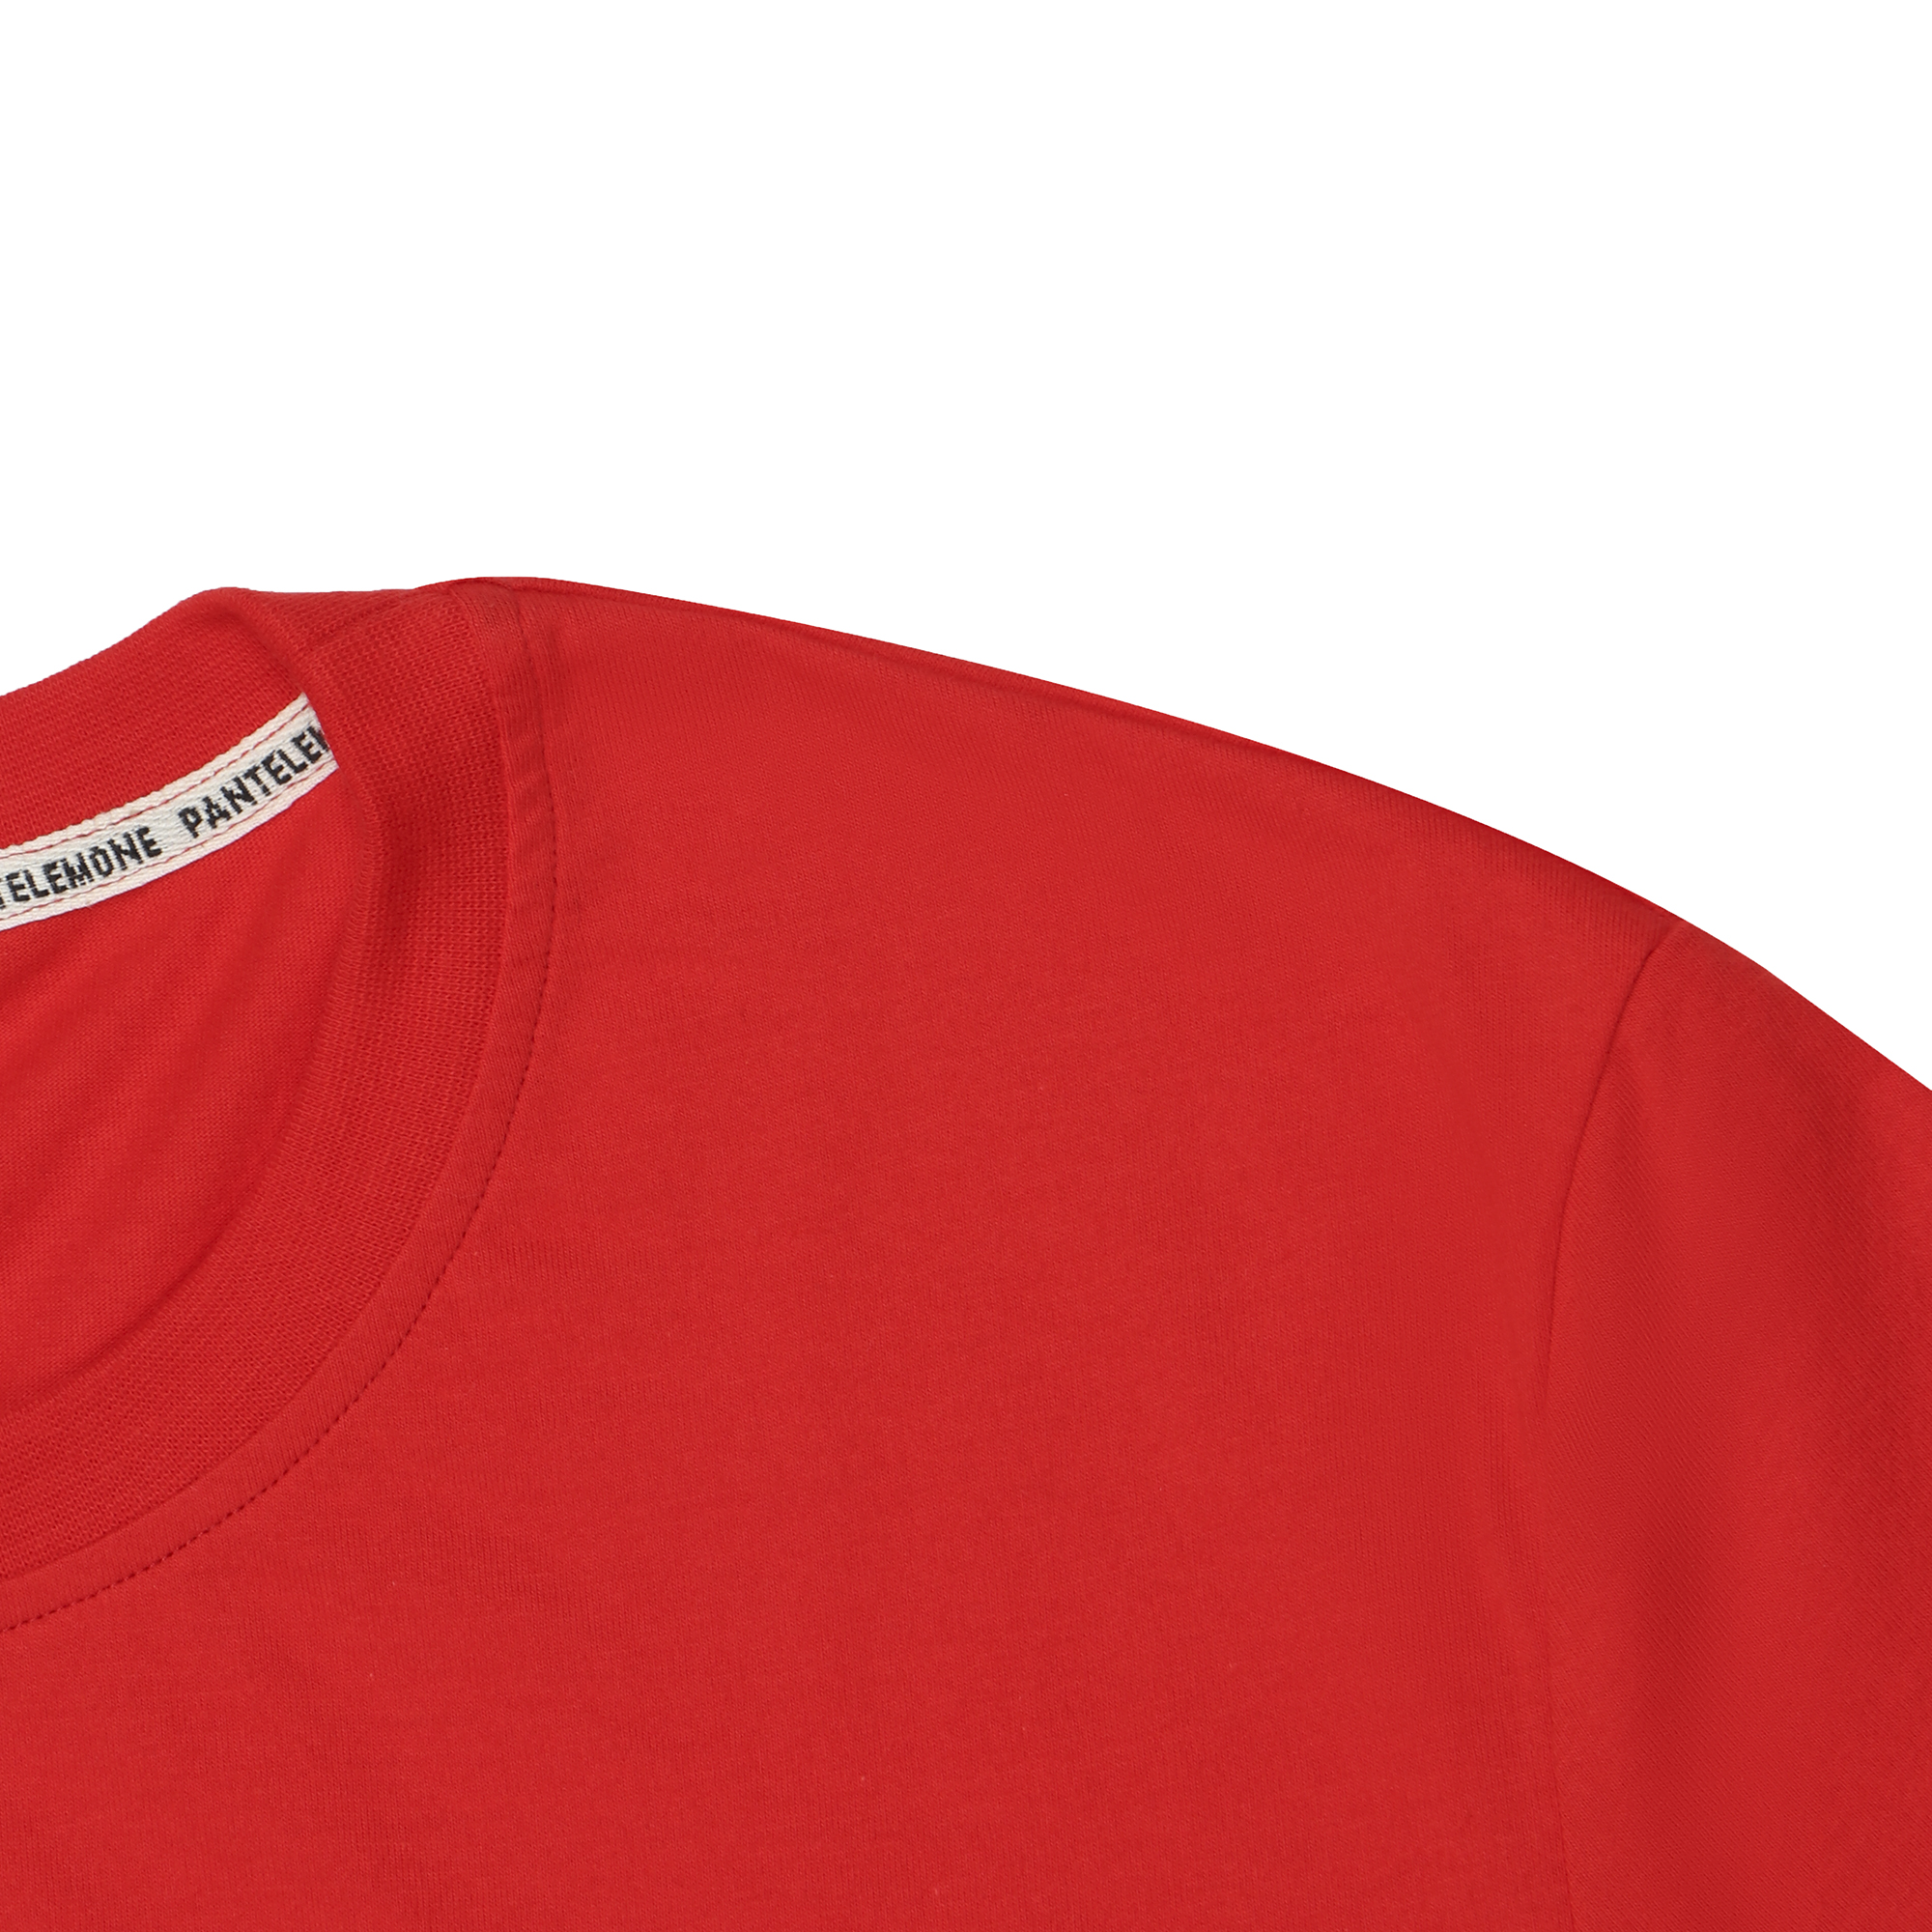 Мужская футболка Pantelemone MF-913 52 красная, цвет красный, размер 52 - фото 2